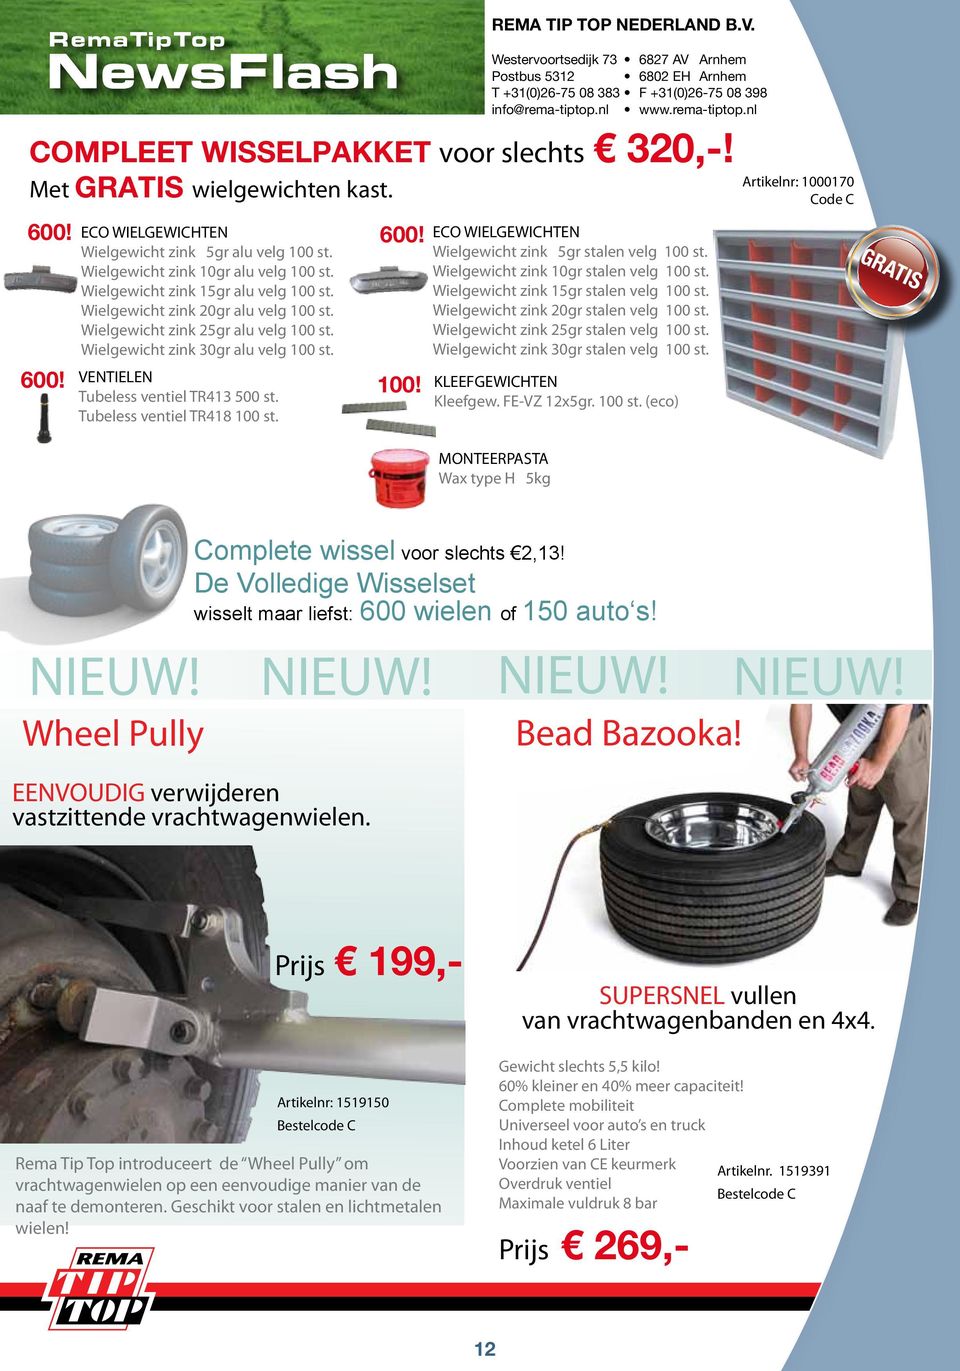 Tubeless ventiel TR413 500 st. Tubeless ventiel TR418 100 st. Rema Tip Top Nederland B.V.